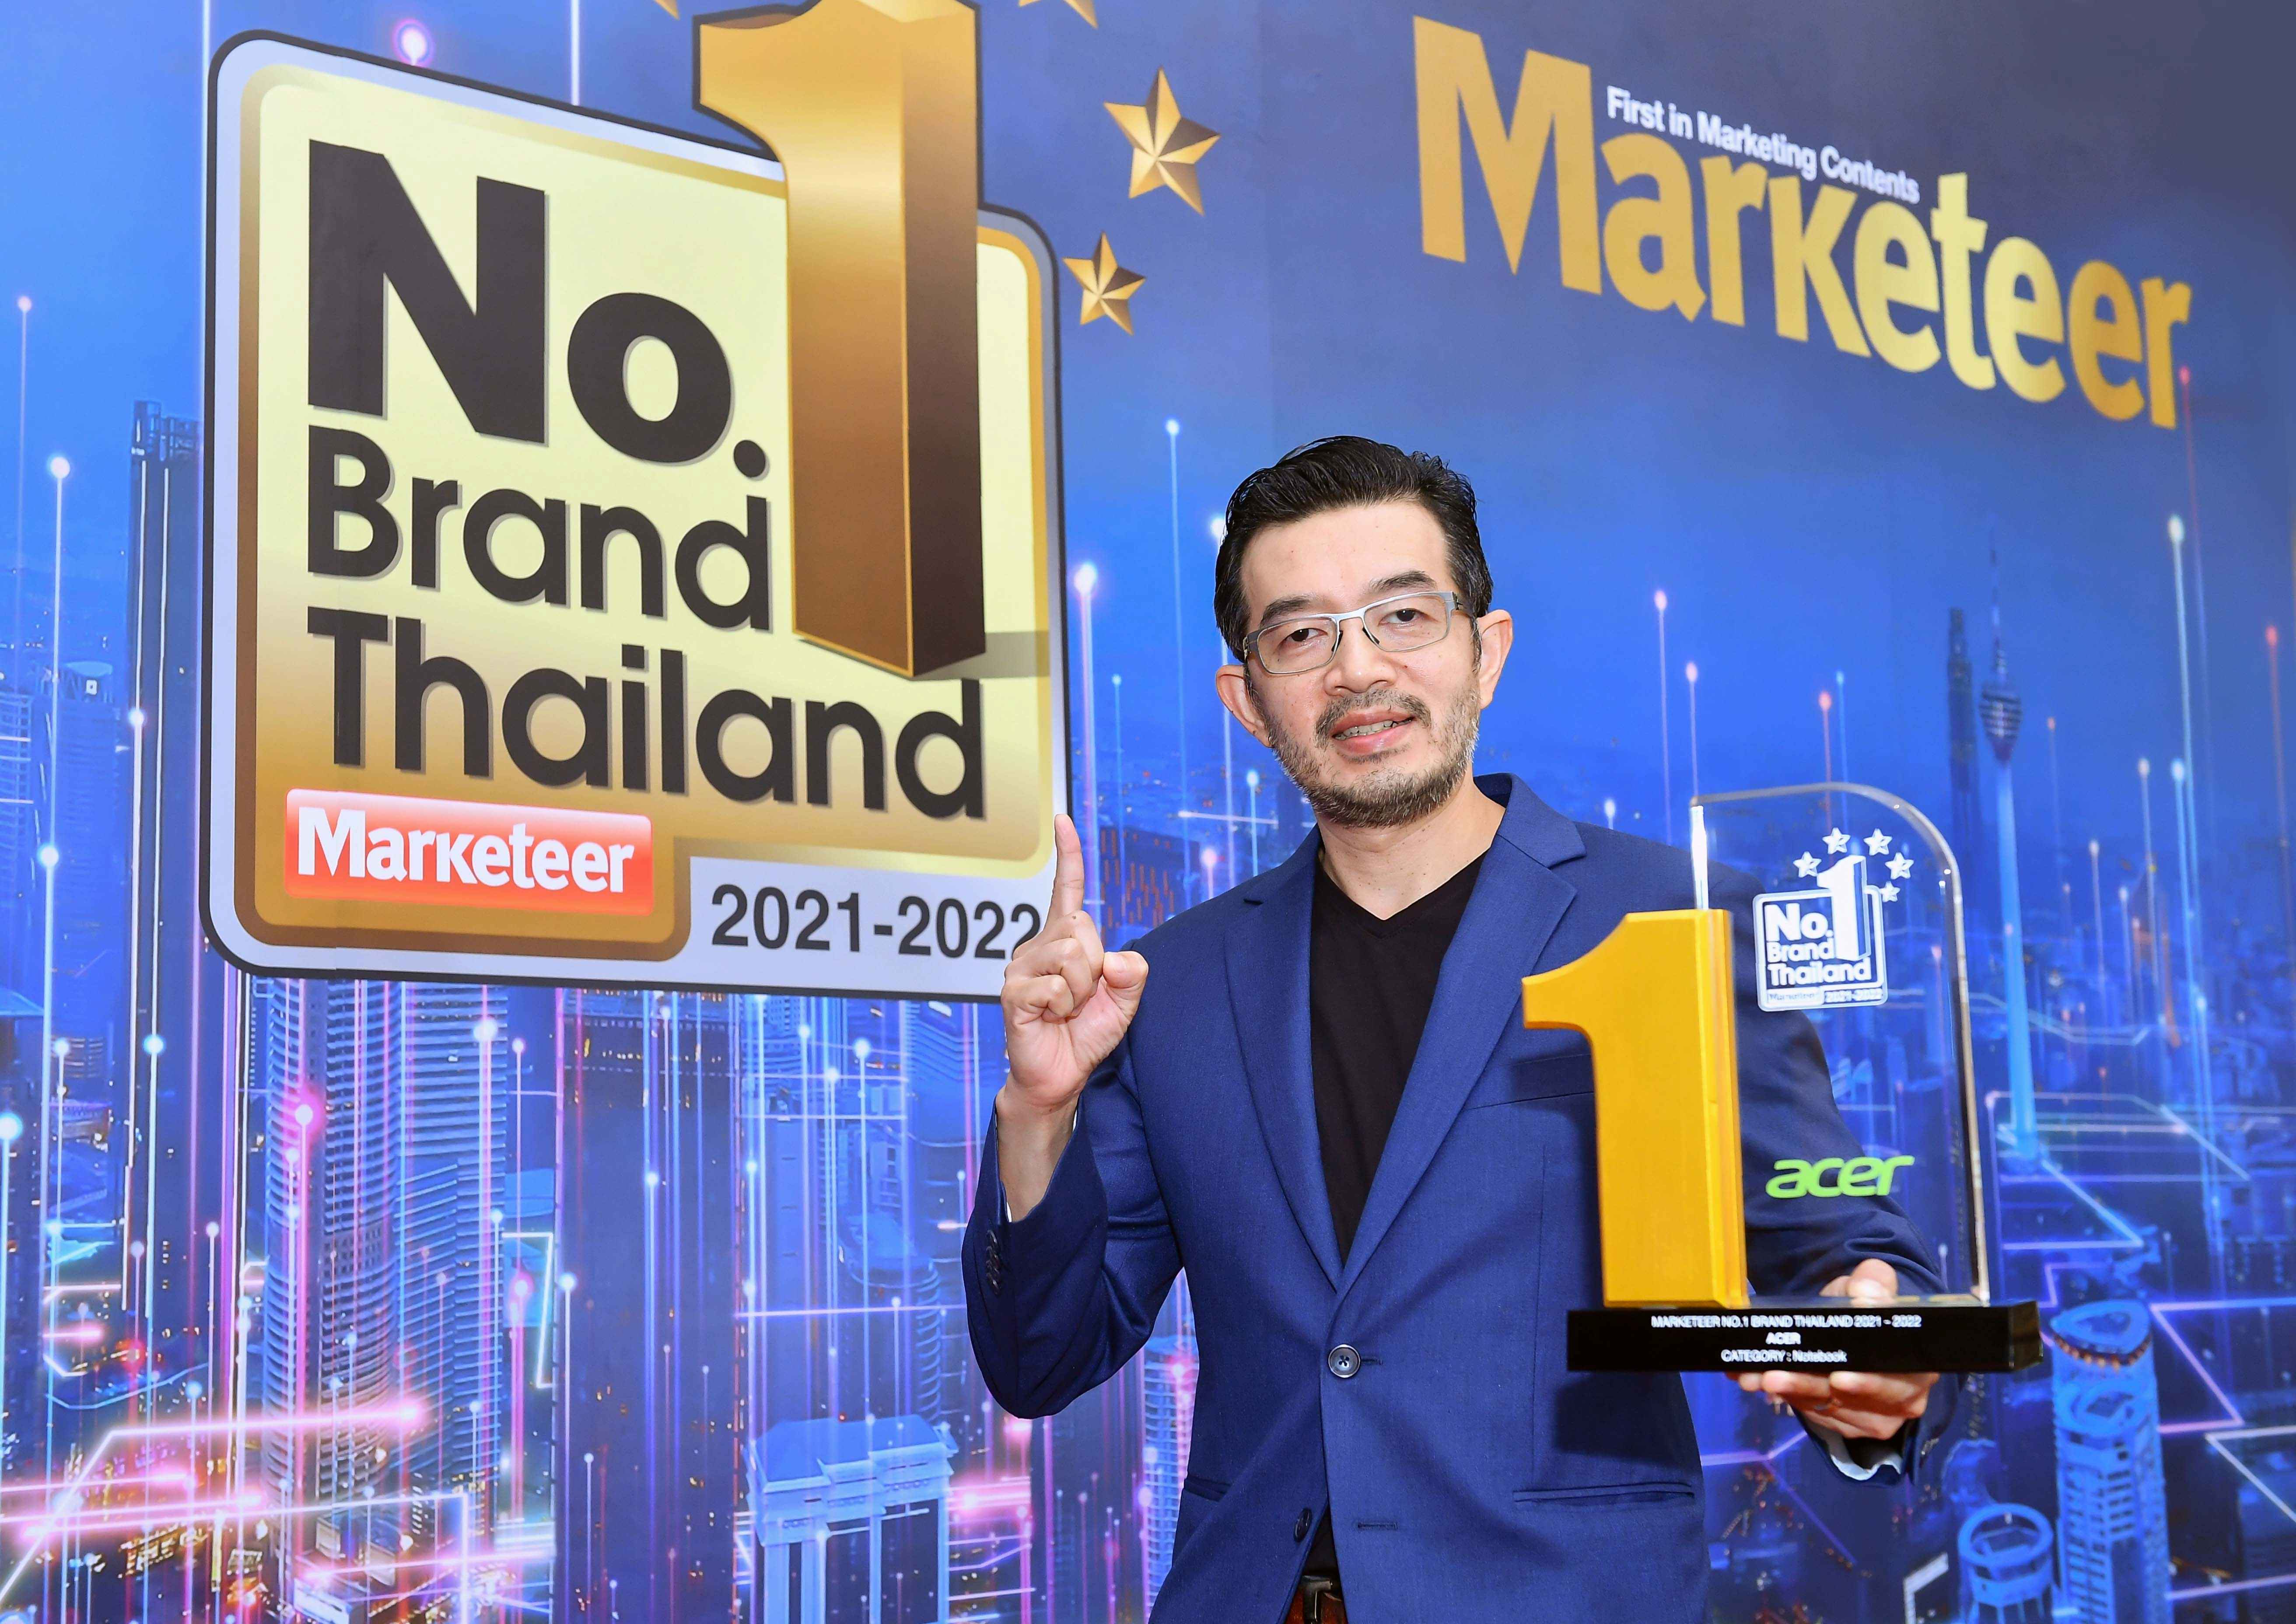 “เอเซอร์” คว้ารางวัล No. 1 Brand Thailand 2021-2022  ตอกย้ำความมุ่งมั่นพัฒนาผลิตภัณฑ์ที่ตอบโจทย์ทุกความต้องการ  การันตีความไว้วางใจจากผู้บริโภคเป็นปีที่ 11